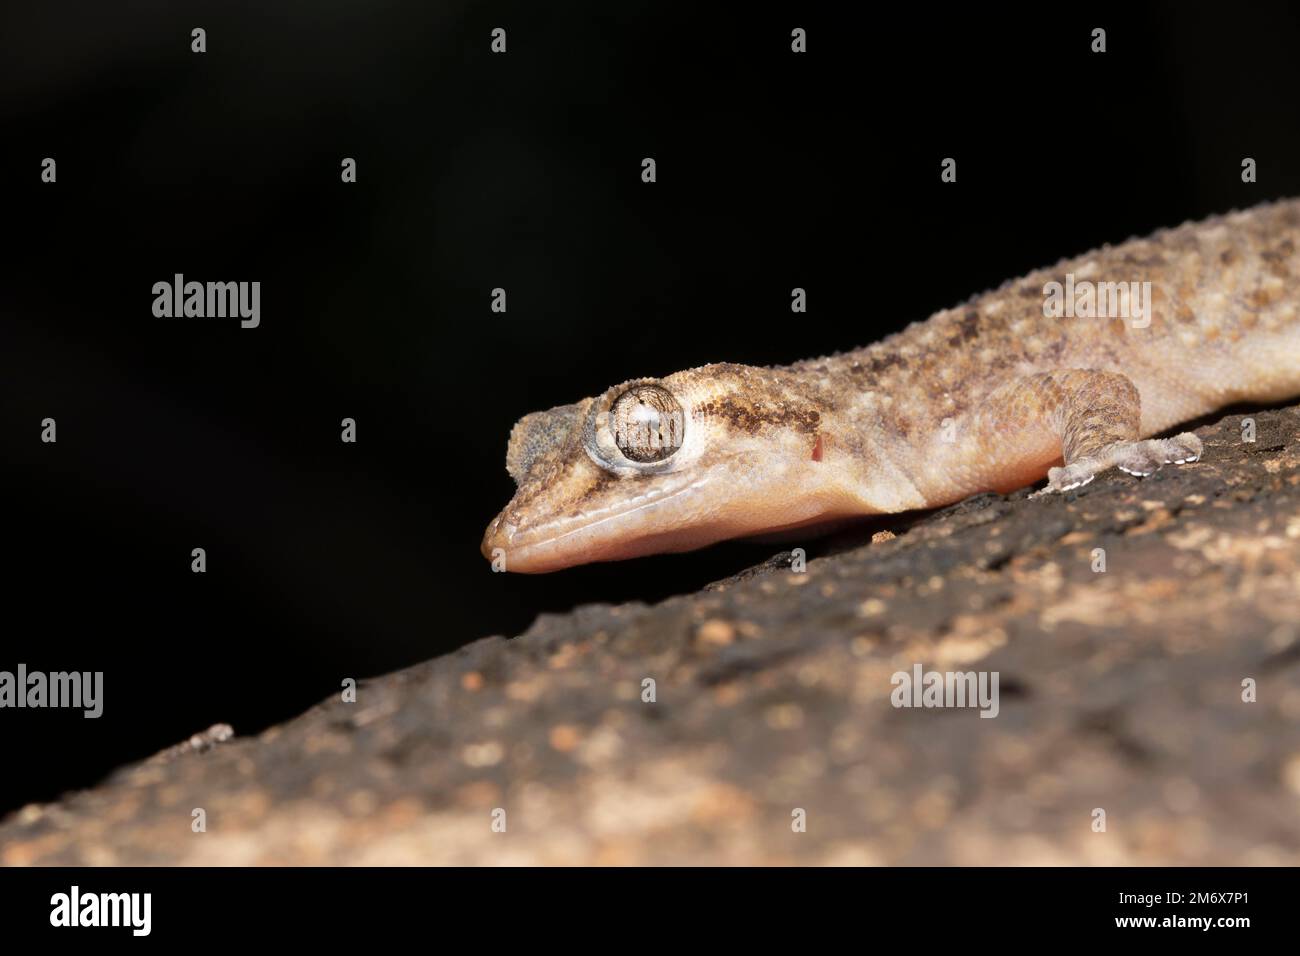 Murray's House Gecko, Hemidactylus murrayi, Gekkonidae Stock Photo